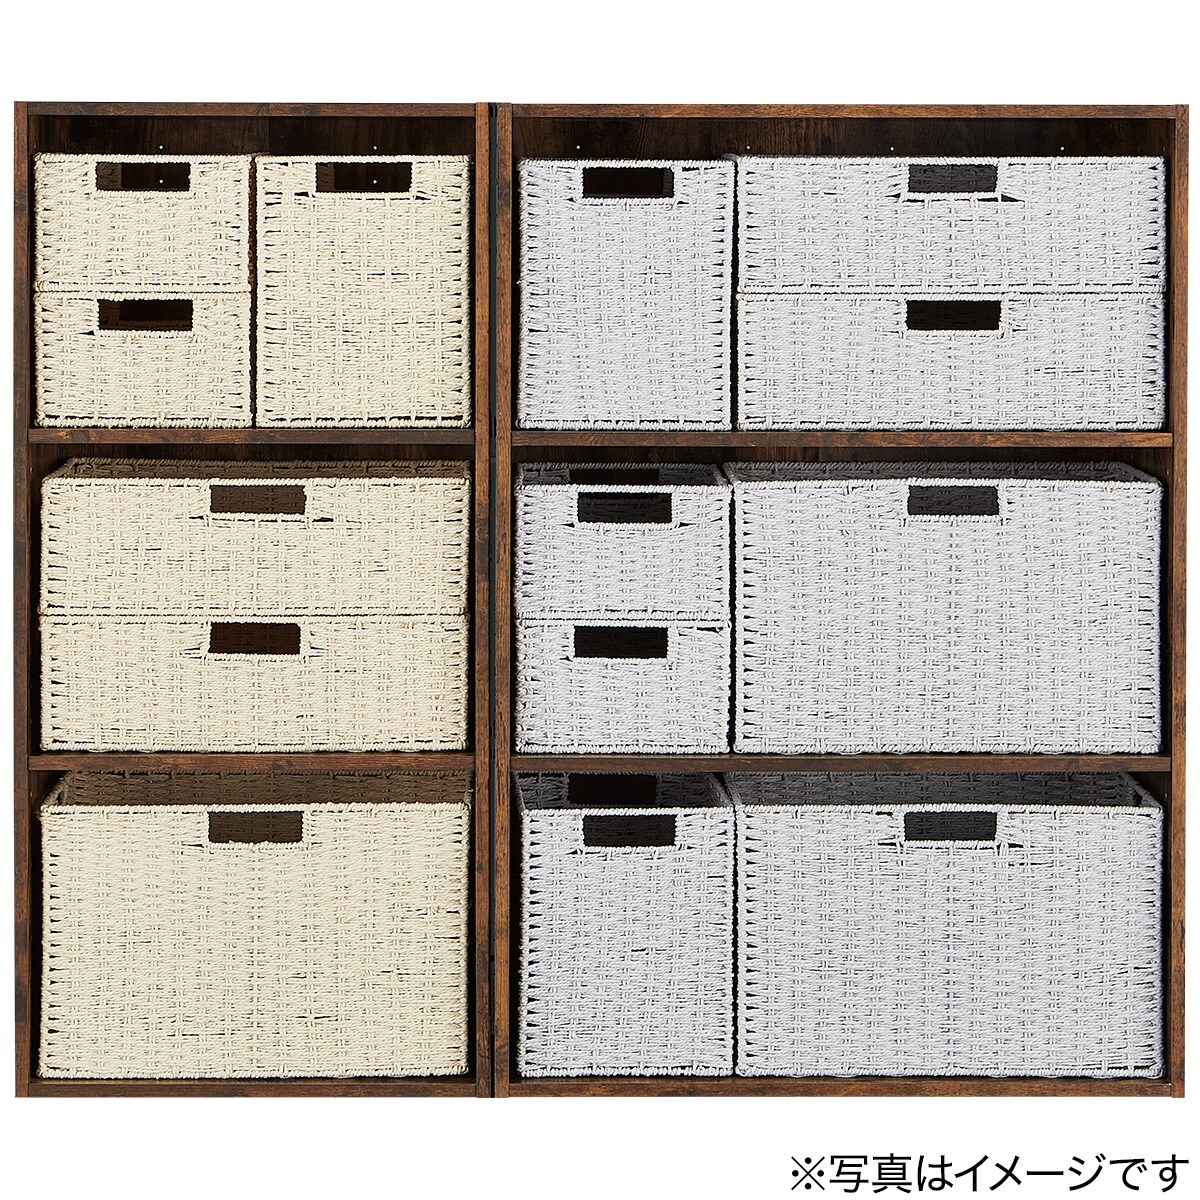  basket lyra 3 regular (GY) storage case storage box nitoli